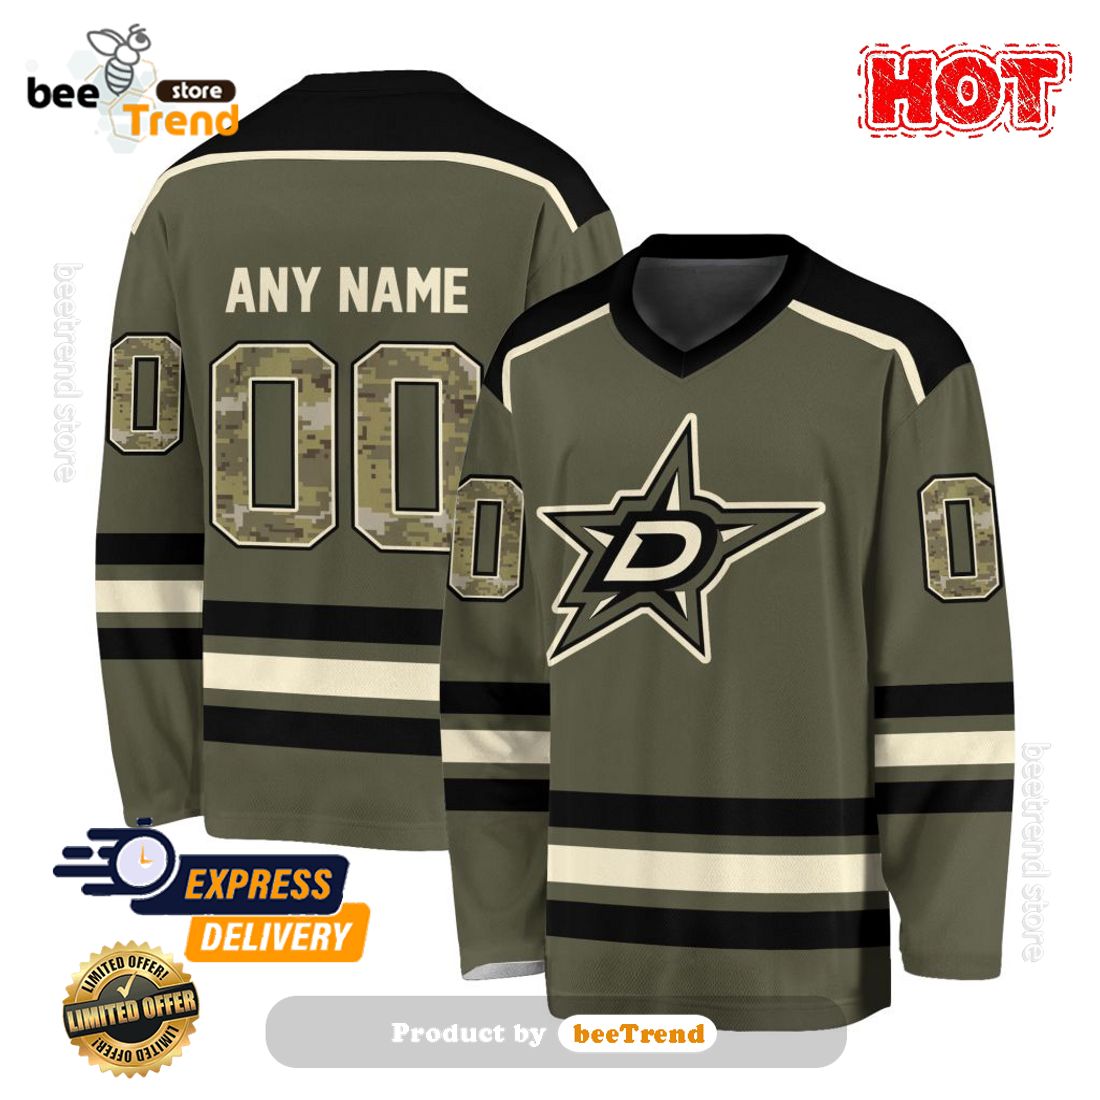 NHL Dallas Stars Custom Name Number Jersey Halloween Zip Up Hoodie